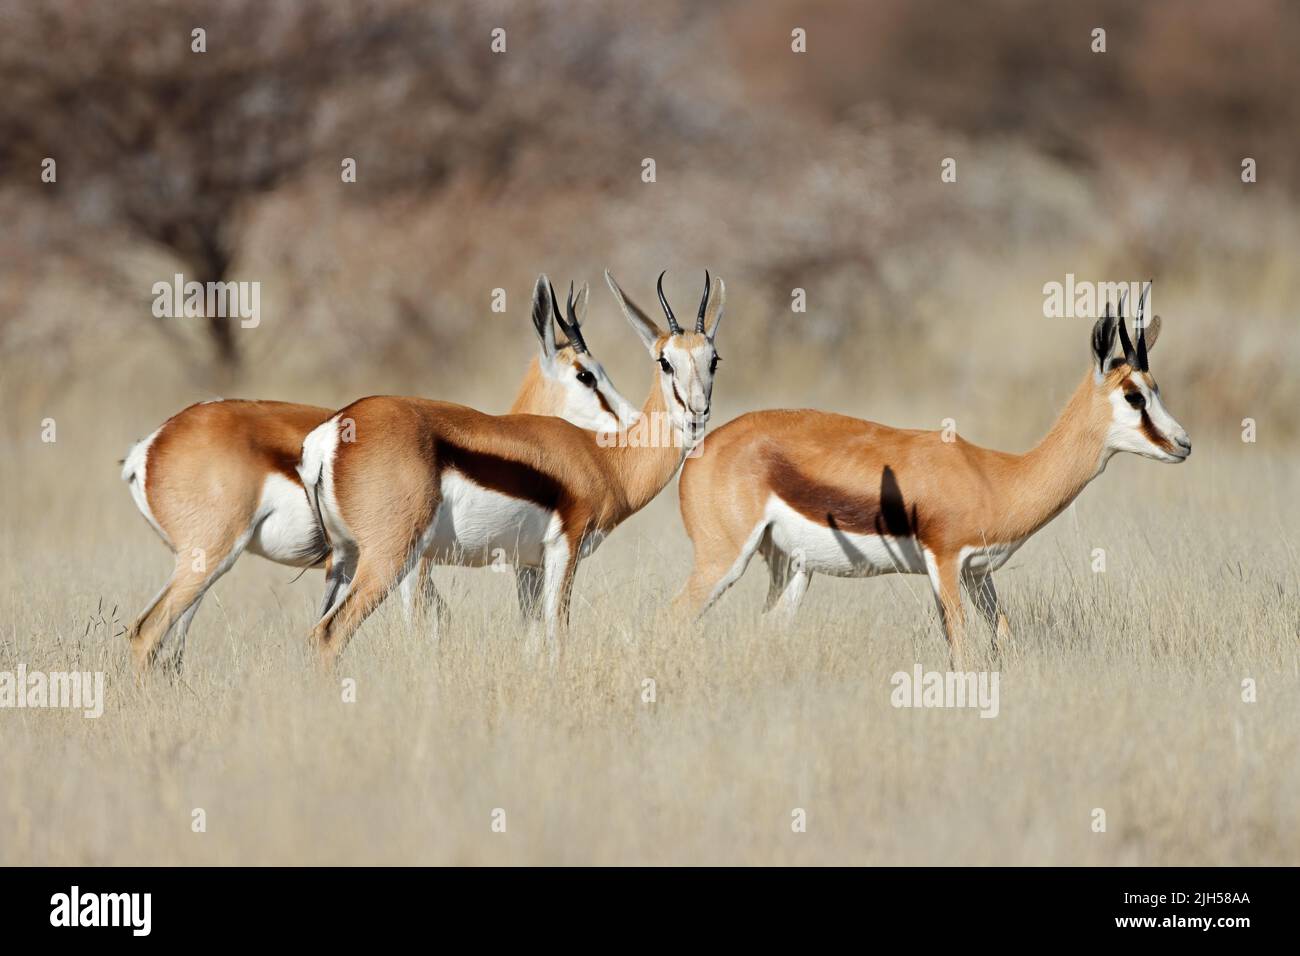 Antilopes de Springbok (Antidorcas marsupialis) dans les prairies, parc national de Mokala, Afrique du Sud Banque D'Images